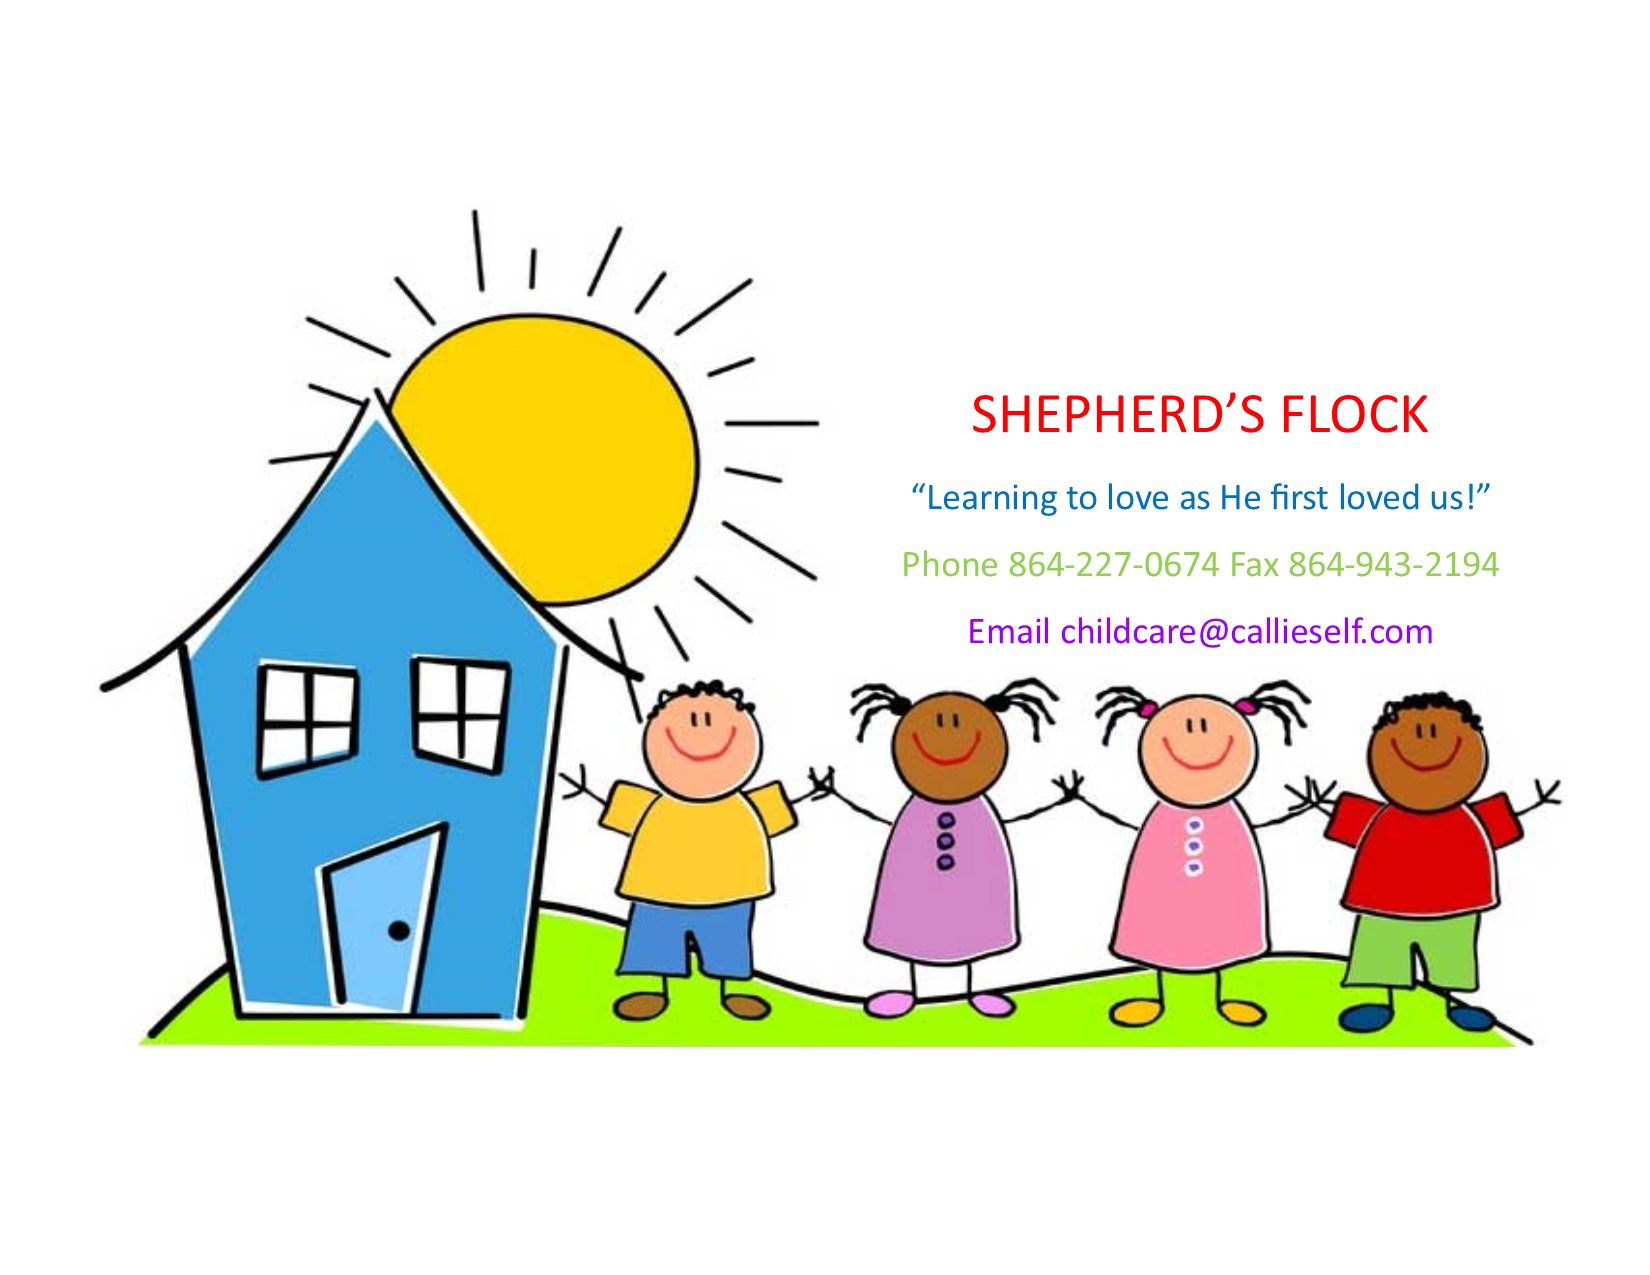 Shepherd's Flock Childcare